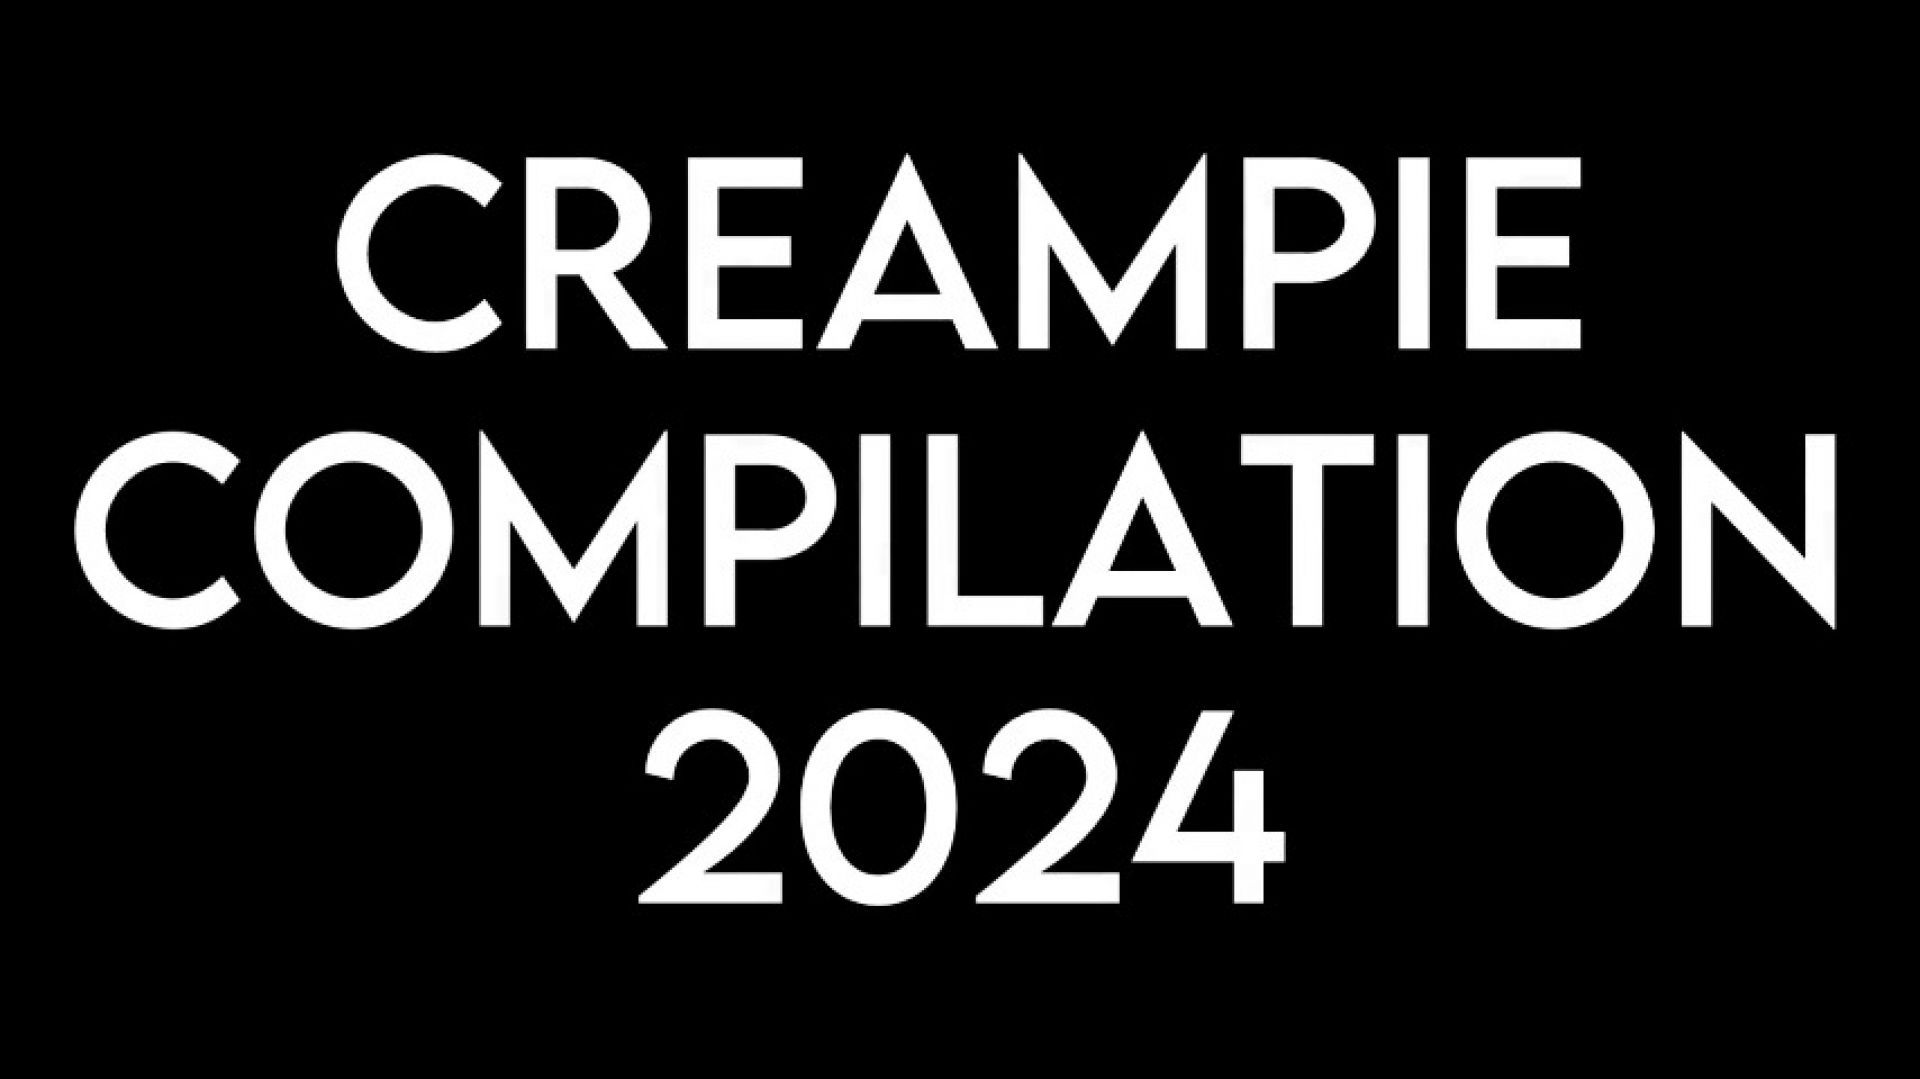 Stacy Sadistic CreamPie Compilation 2024